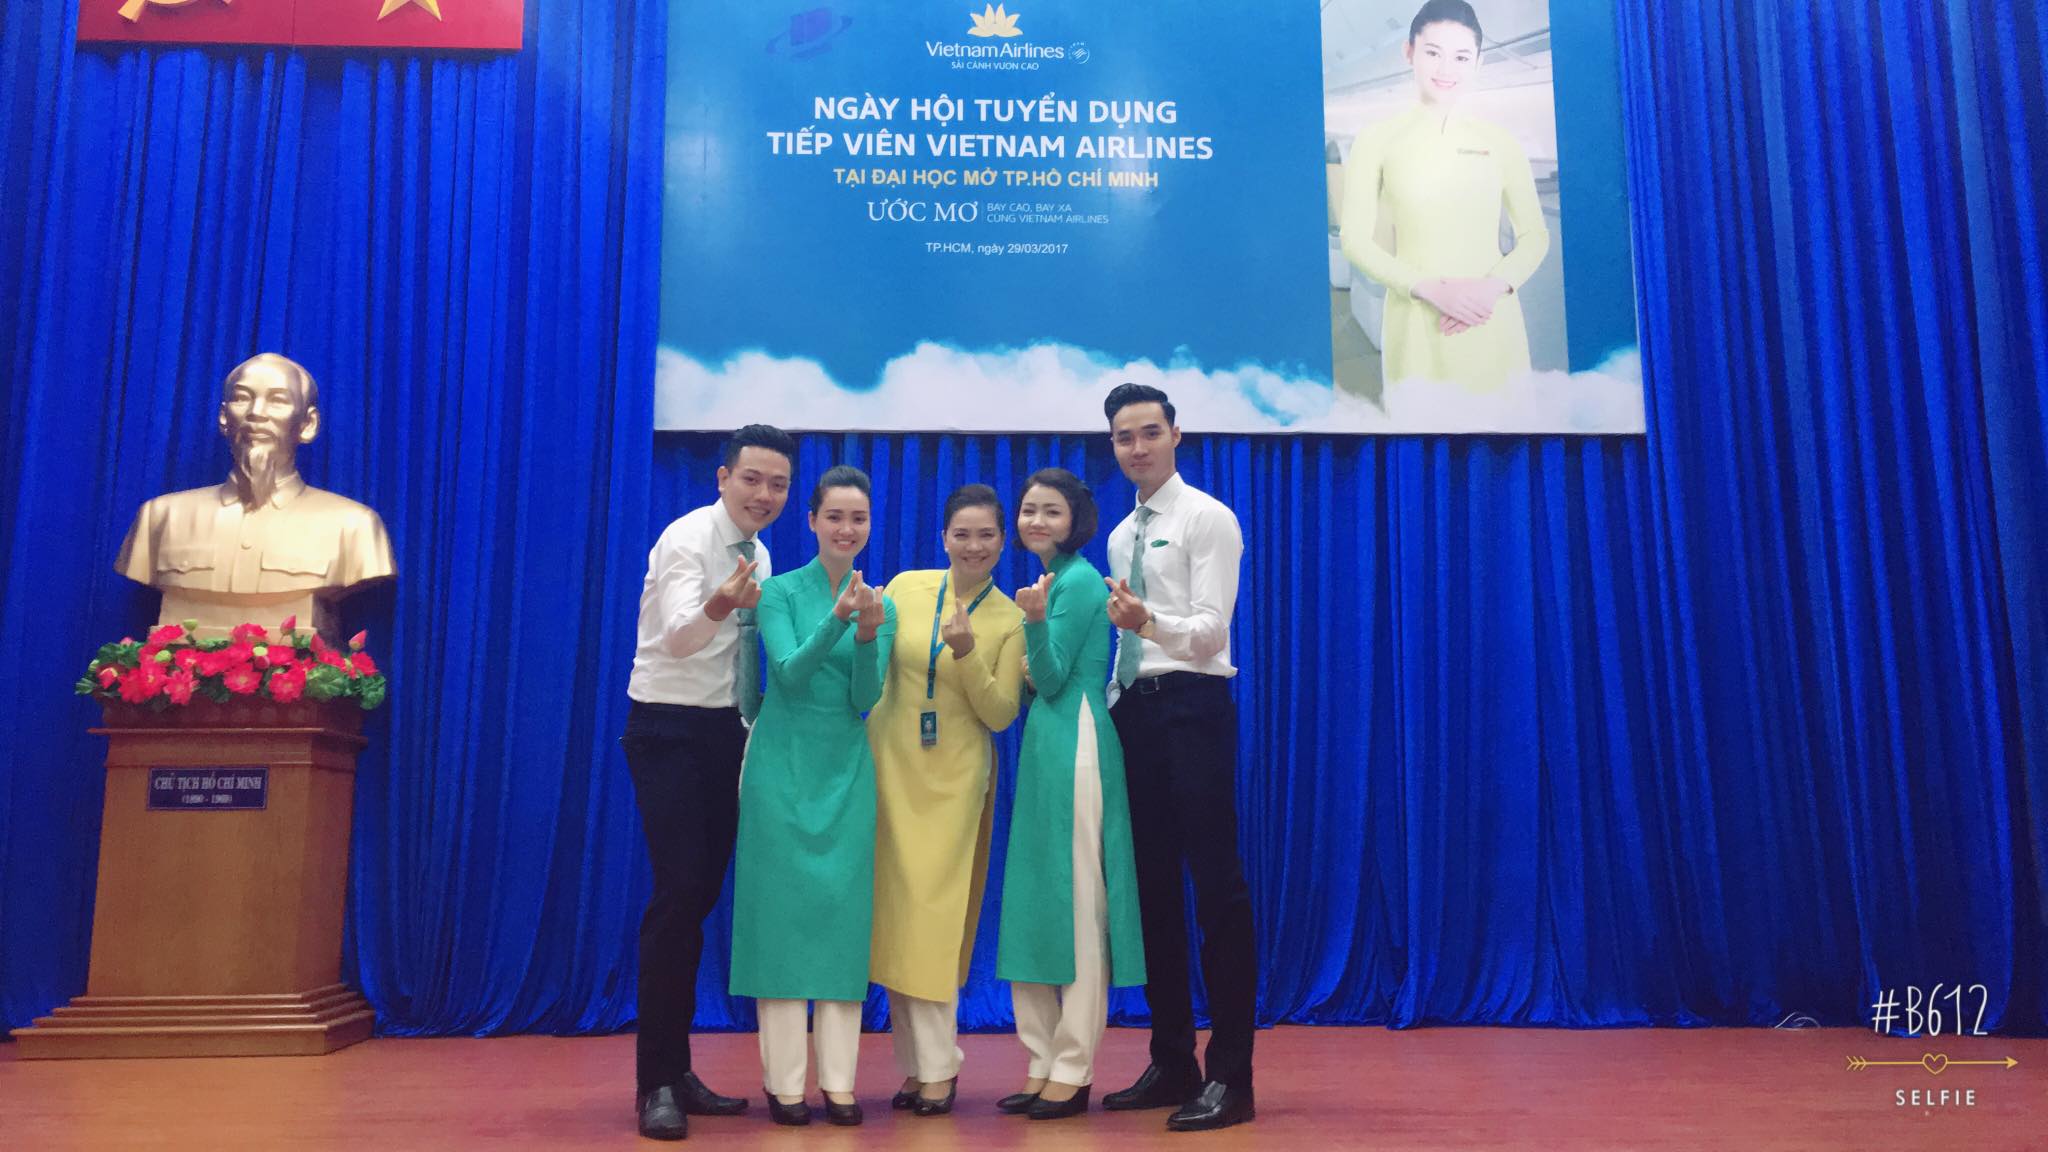 Sinh viên năm cuối hào hứng với ngày hội tuyển dụng VietNam Airlines tại Trường Đại học Mở Tp.HCM